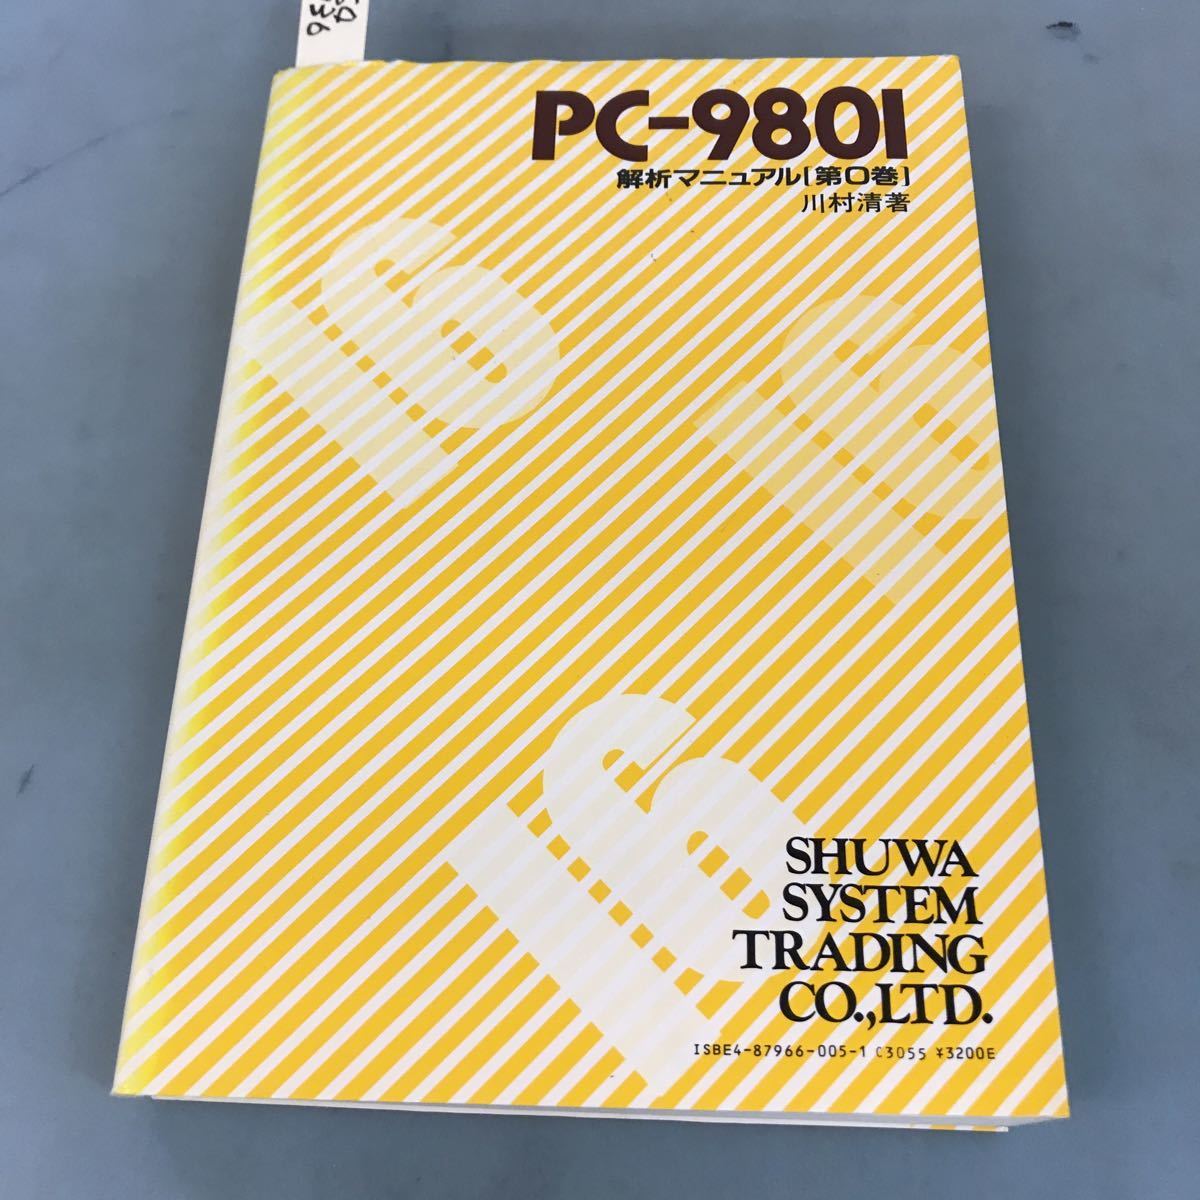 A64-136 PC-9801 解析マニュアル[第0巻] 秀和システムトレーディング株式会社